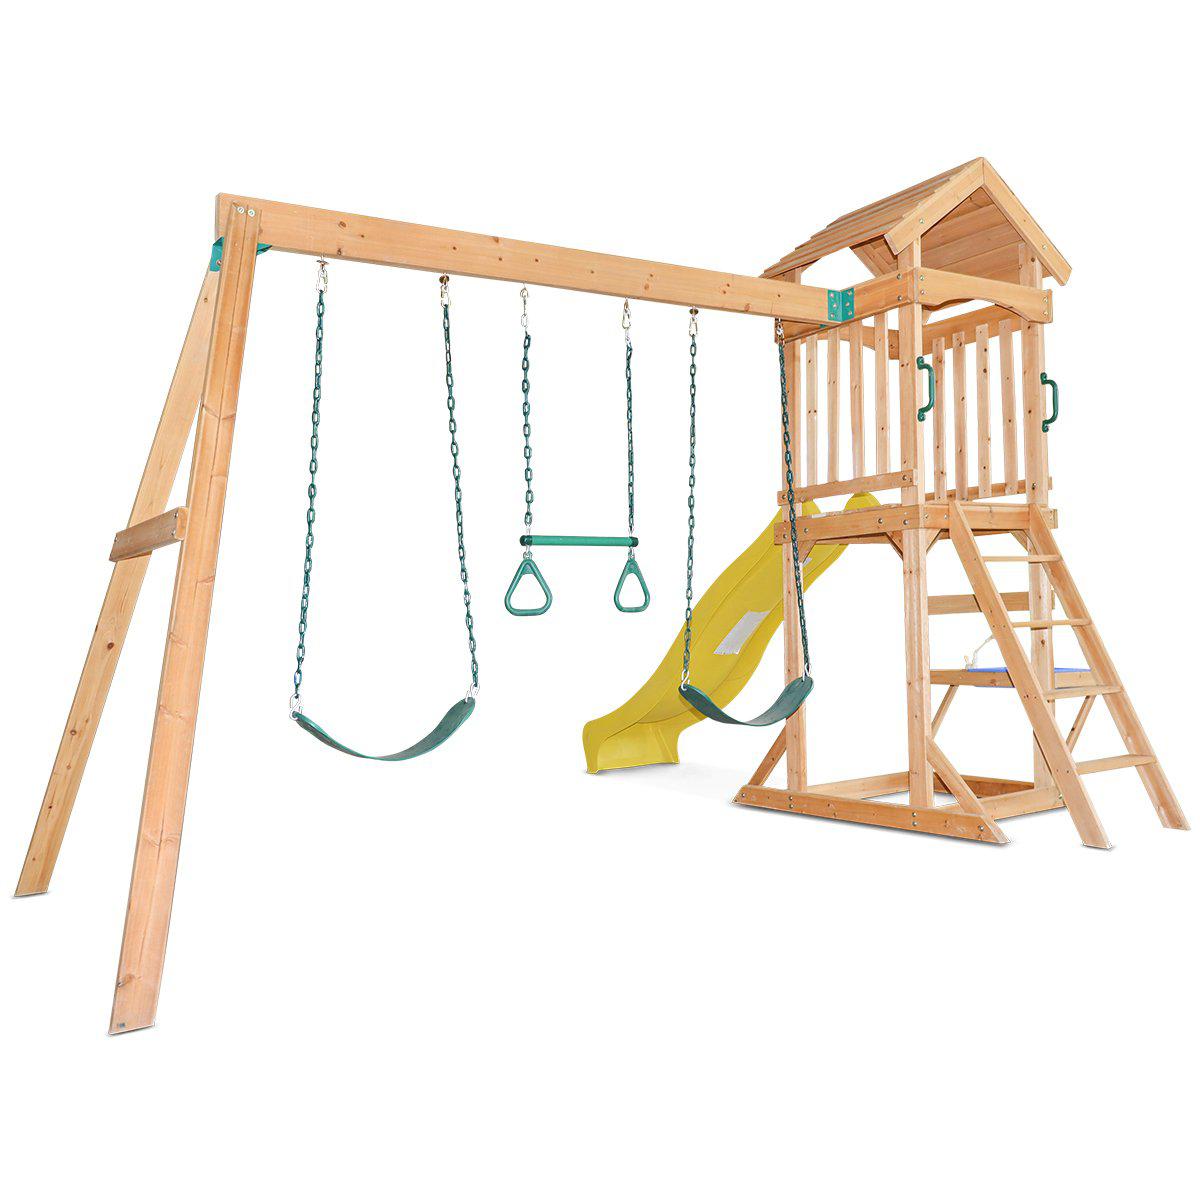 Albert Park Play Centre with Slide: Joyful Outdoor Activities for Children